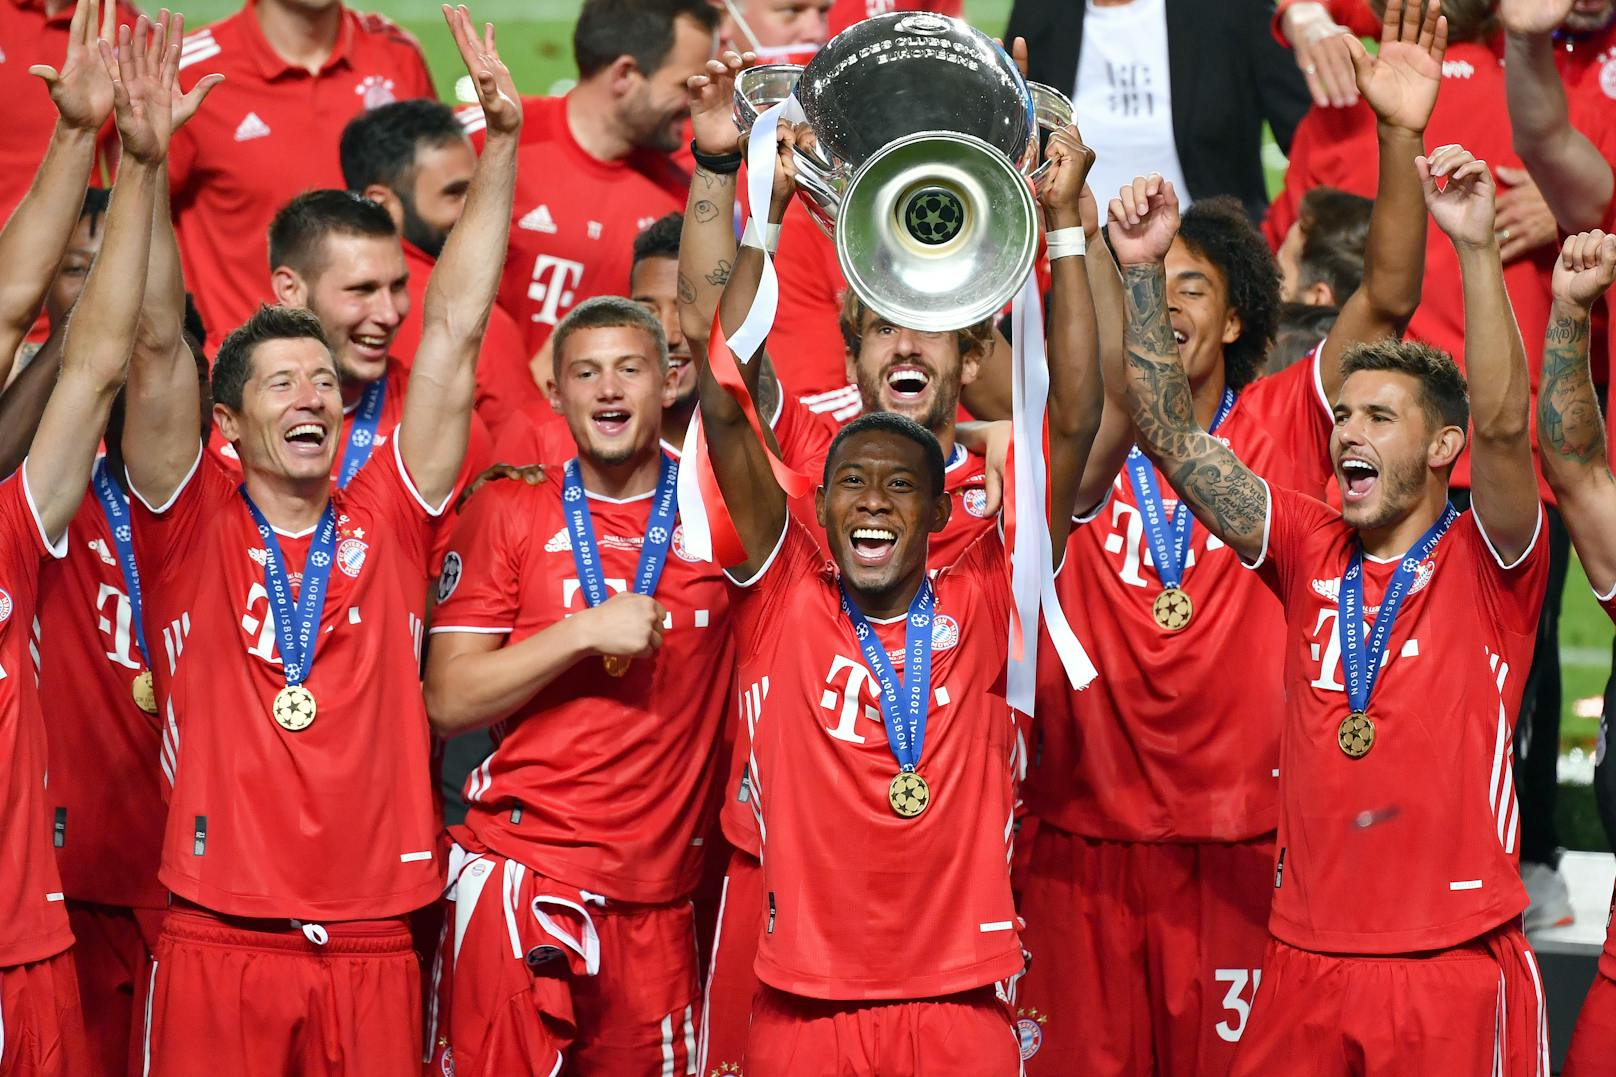 Die Bayern bezwangen im Halbfinale Lyon mit 3:0 und zwangen im Endspiel Paris Saint-Germain mit 1:0 in die Knie. Das Triple war perfekt. David Alaba durfte zum zweiten Mal in seiner Karriere den Pokal stemmen.